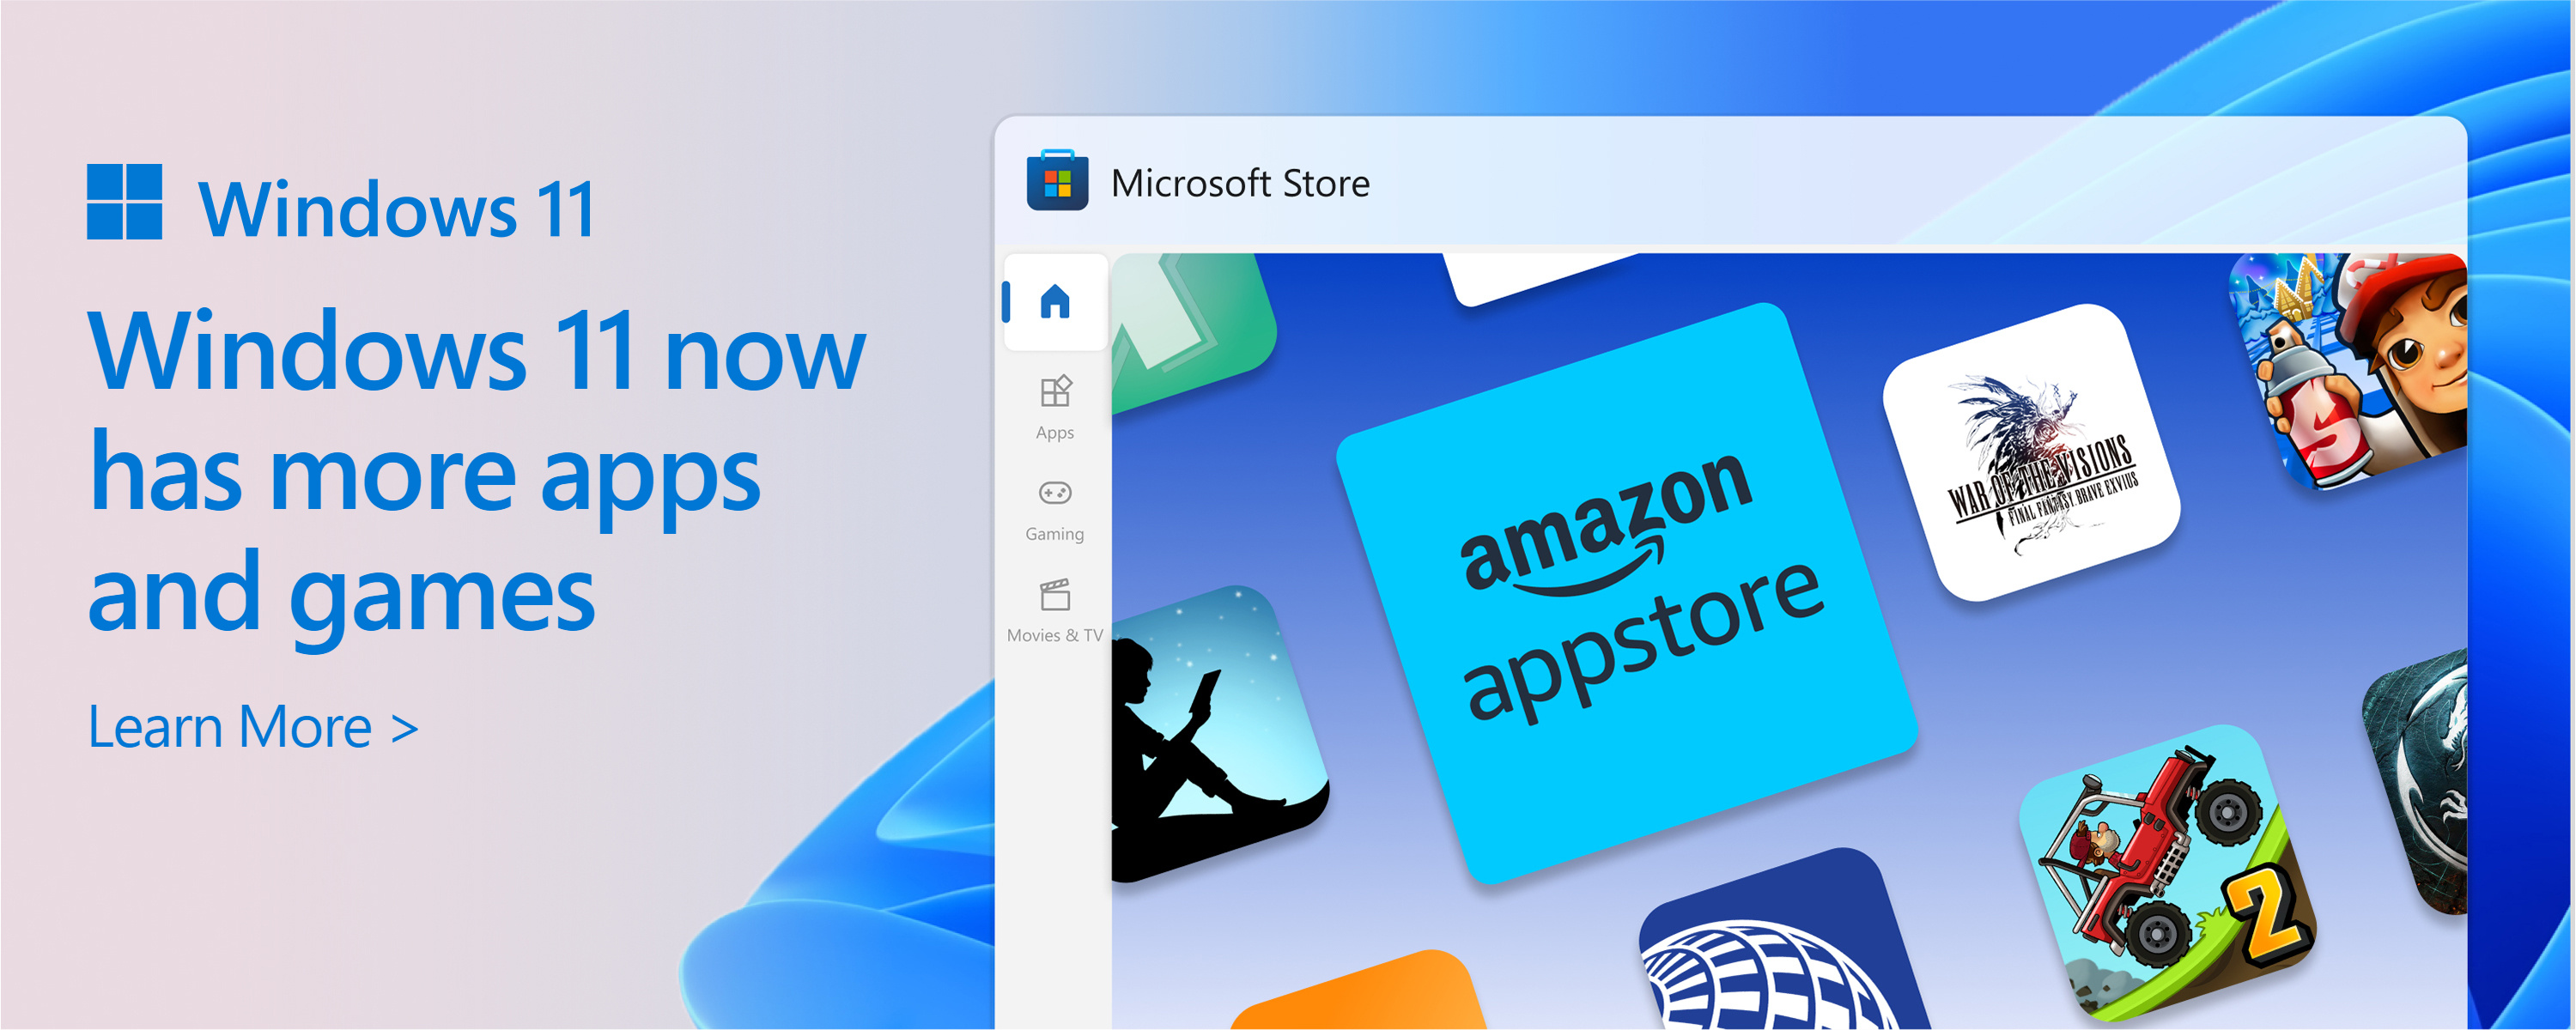 Snimka zaslona trgovine Microsoft Store s tekstom: katalog trgovine Microsoft Store raste. Windows 11 nudi više aplikacija i igara koje su vam potrebne.